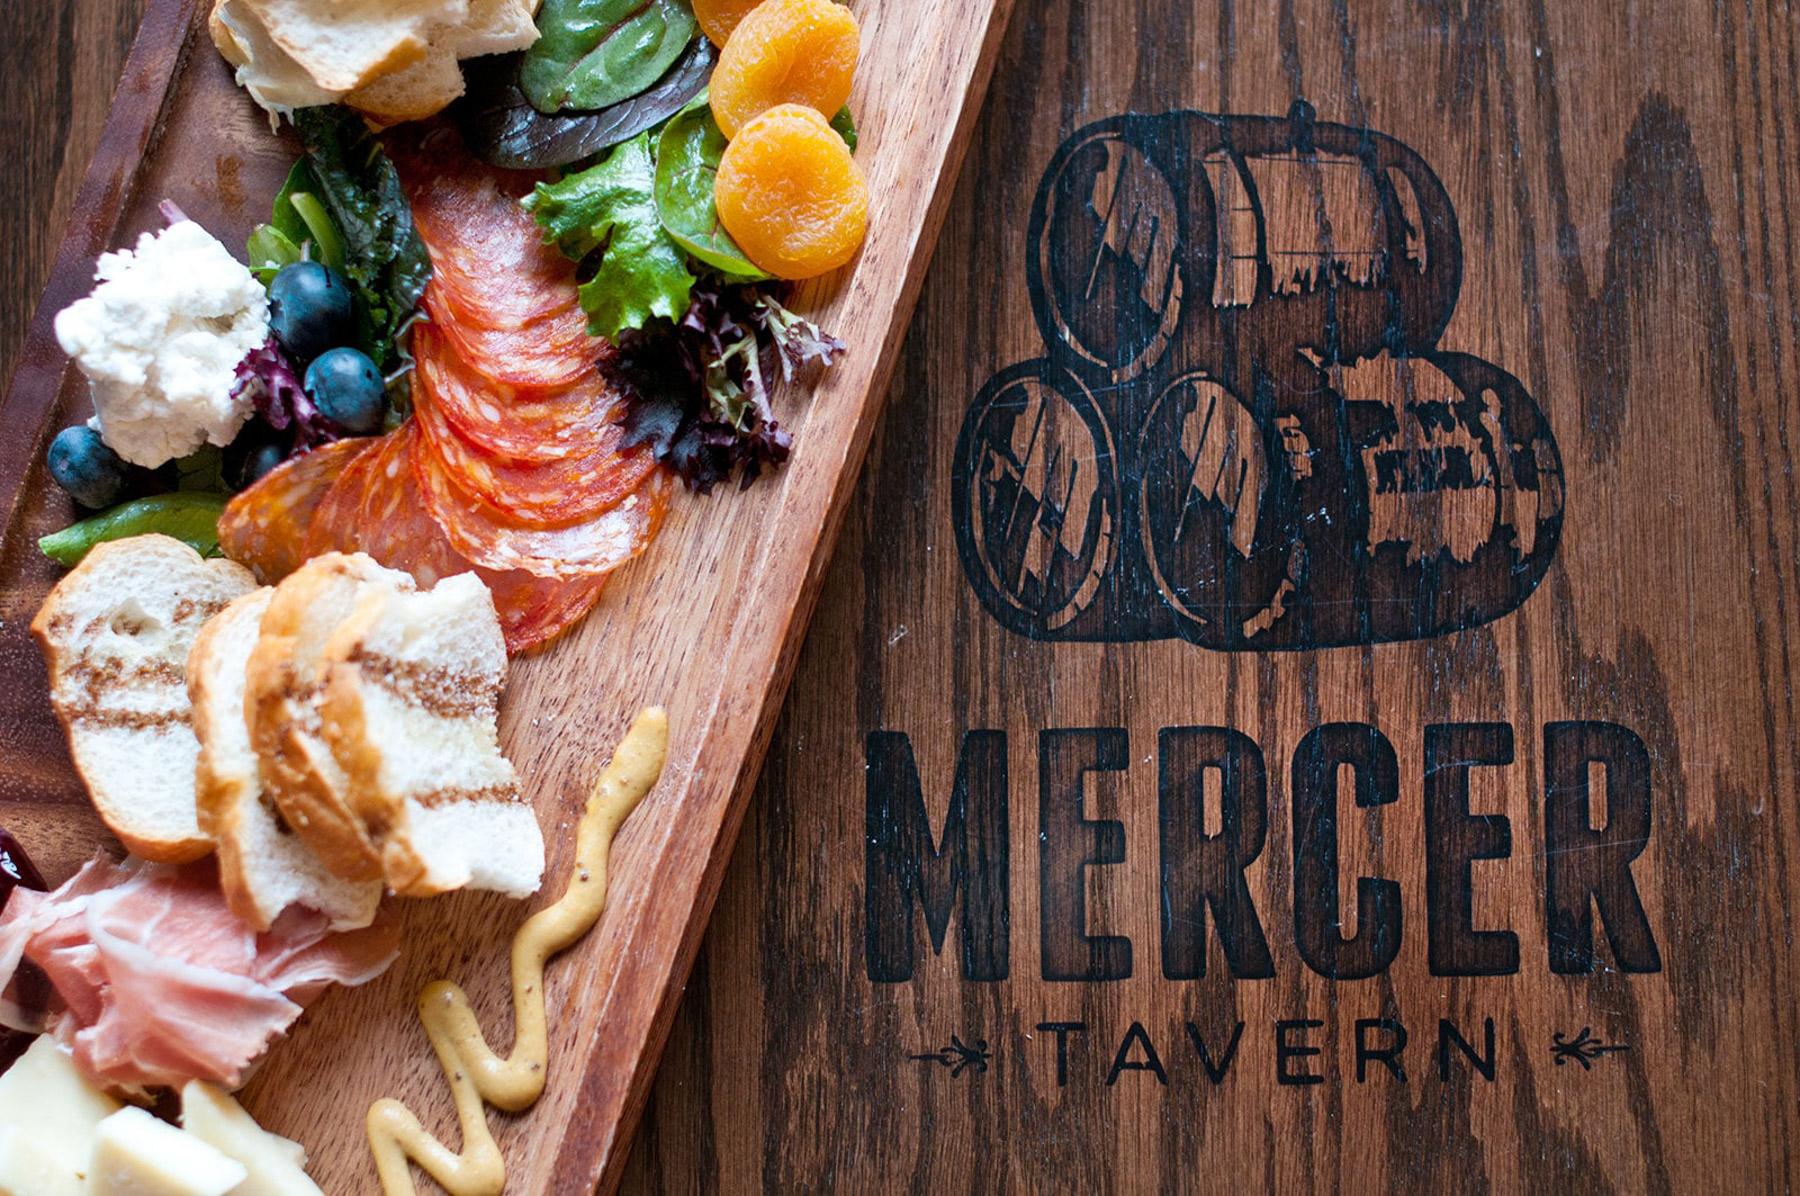 Mercer Tavern